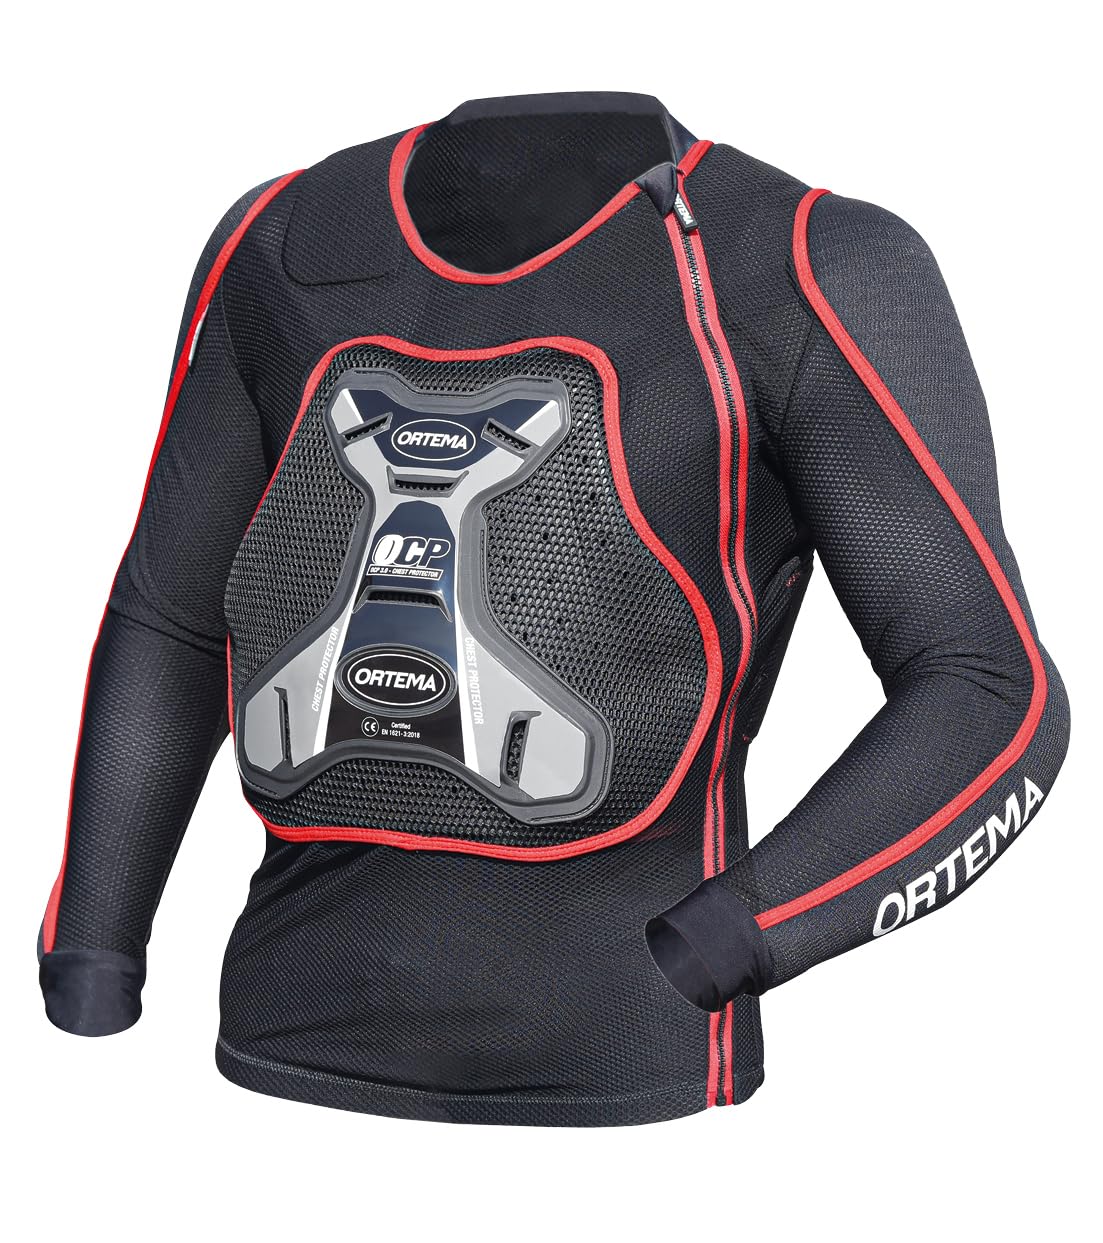 ORTEMA ORTHO-MAX Jacket DUO - Protektorenjacke für den optimalen Rundumschutz - Schützt die Wirbelsäule, Brust, Schultern und Ellenbogen - Motocross/Enduro (S) von ORTEMA